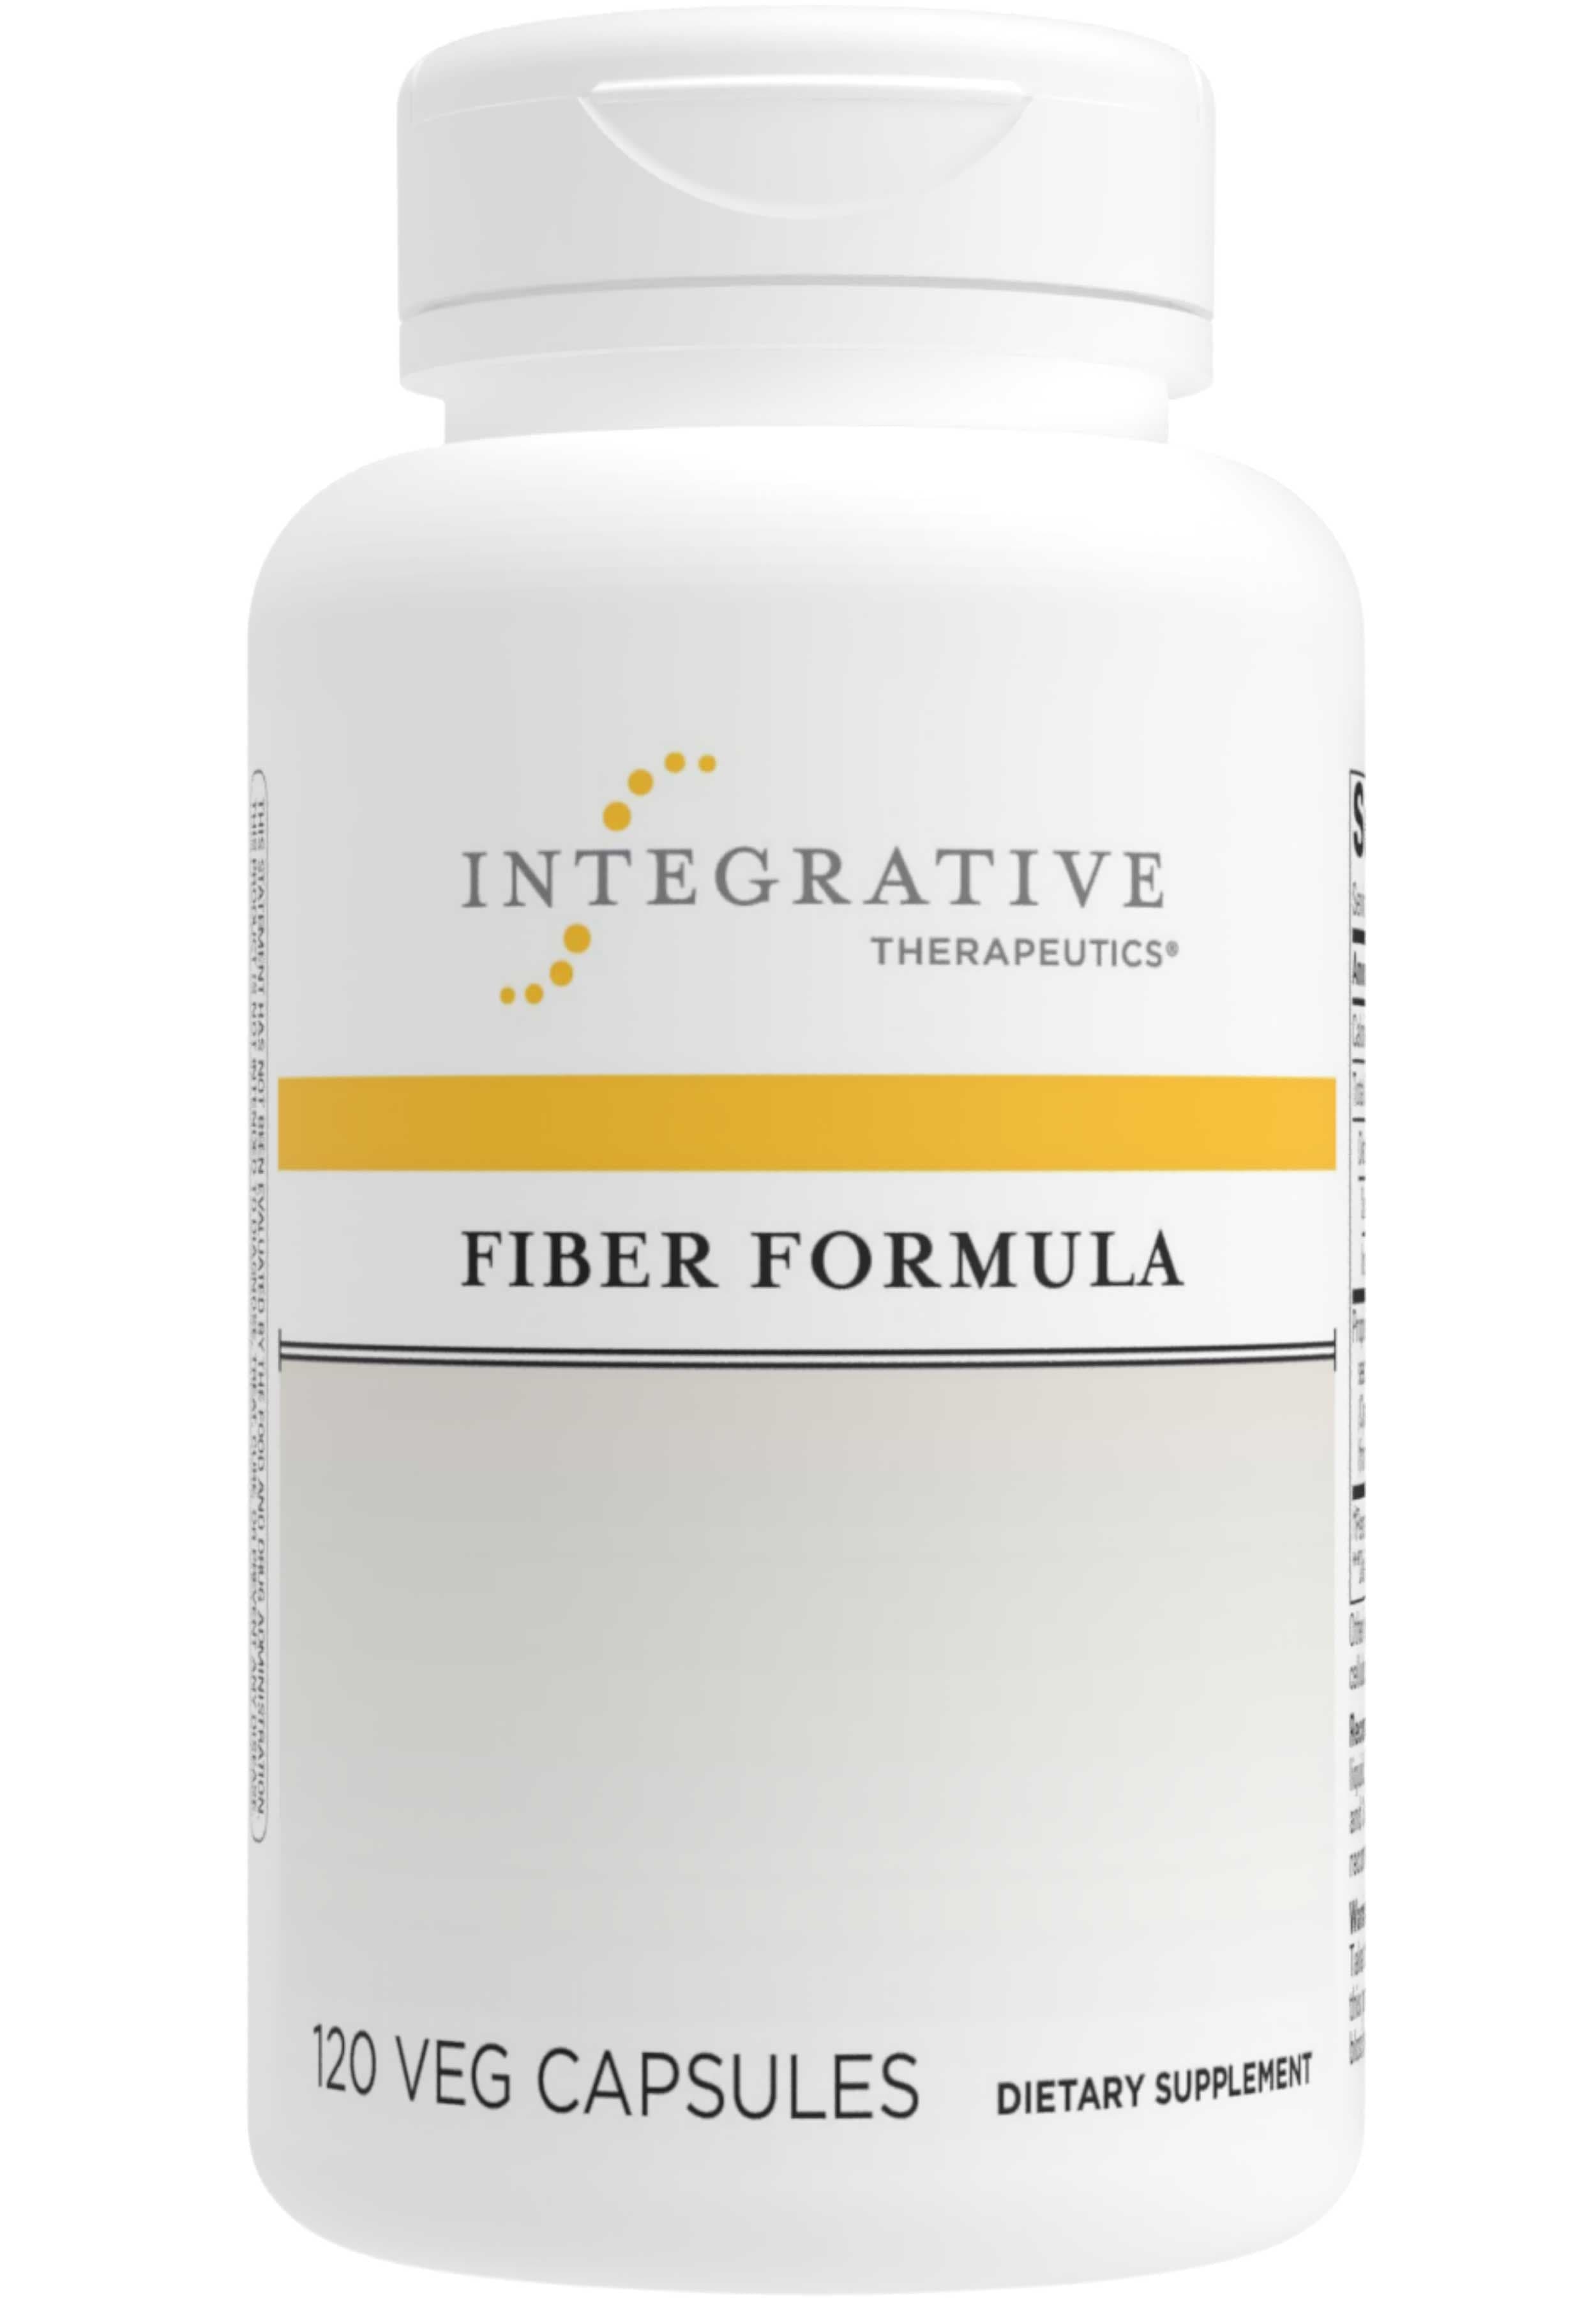 Integrative Therapeutics Fiber Formula